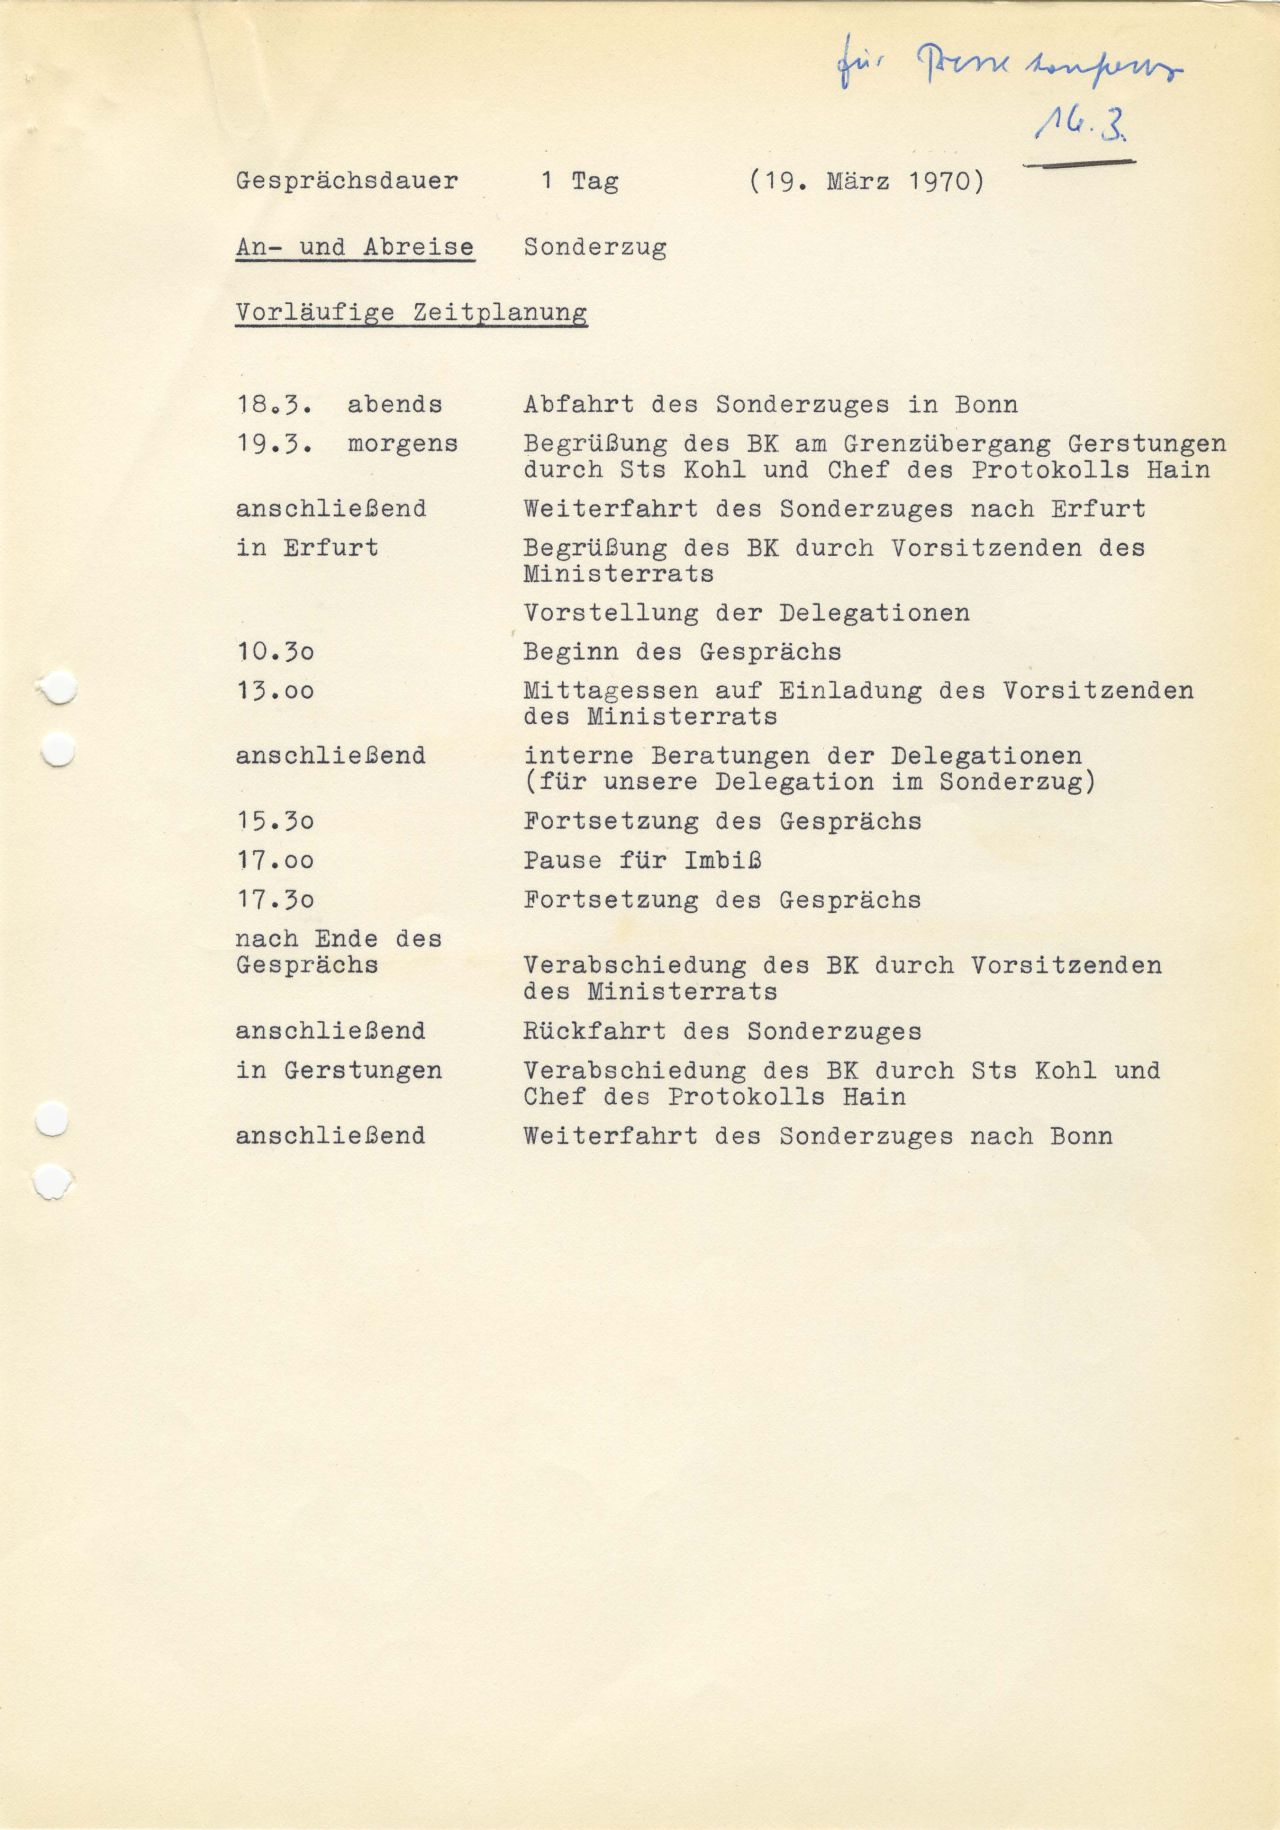 Zeitplan für das Gipfeltreffen von Bundeskanzler Willy Brandt mit dem Vorsitzenden des Ministerrats der Deutschen Demokratischen Republik (DDR), Willi Stoph, am 19. März 1970 in Erfurt.